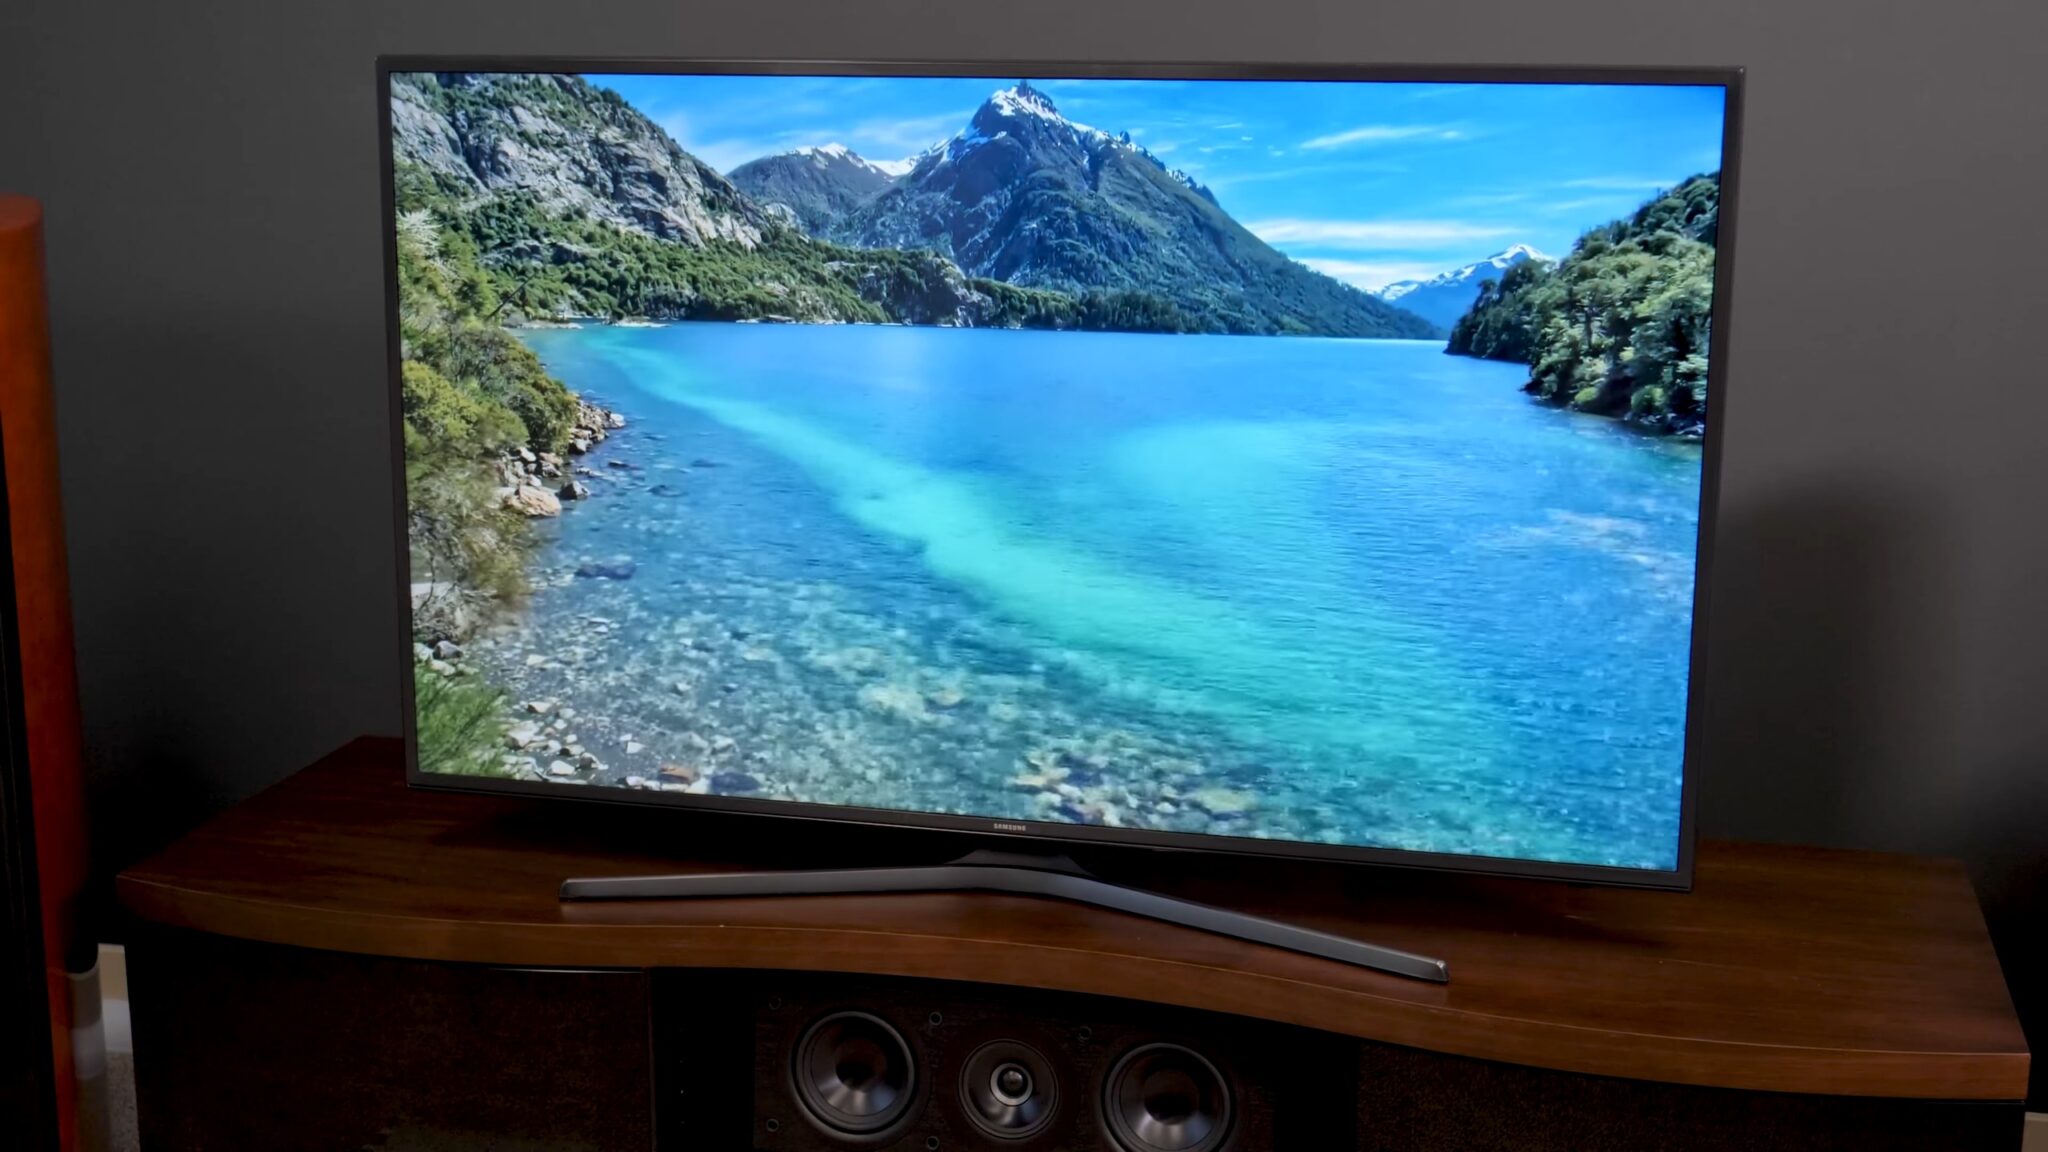 Samsung MU6290 LED Smart TV Review (UN40MU6290, UN43MU6290